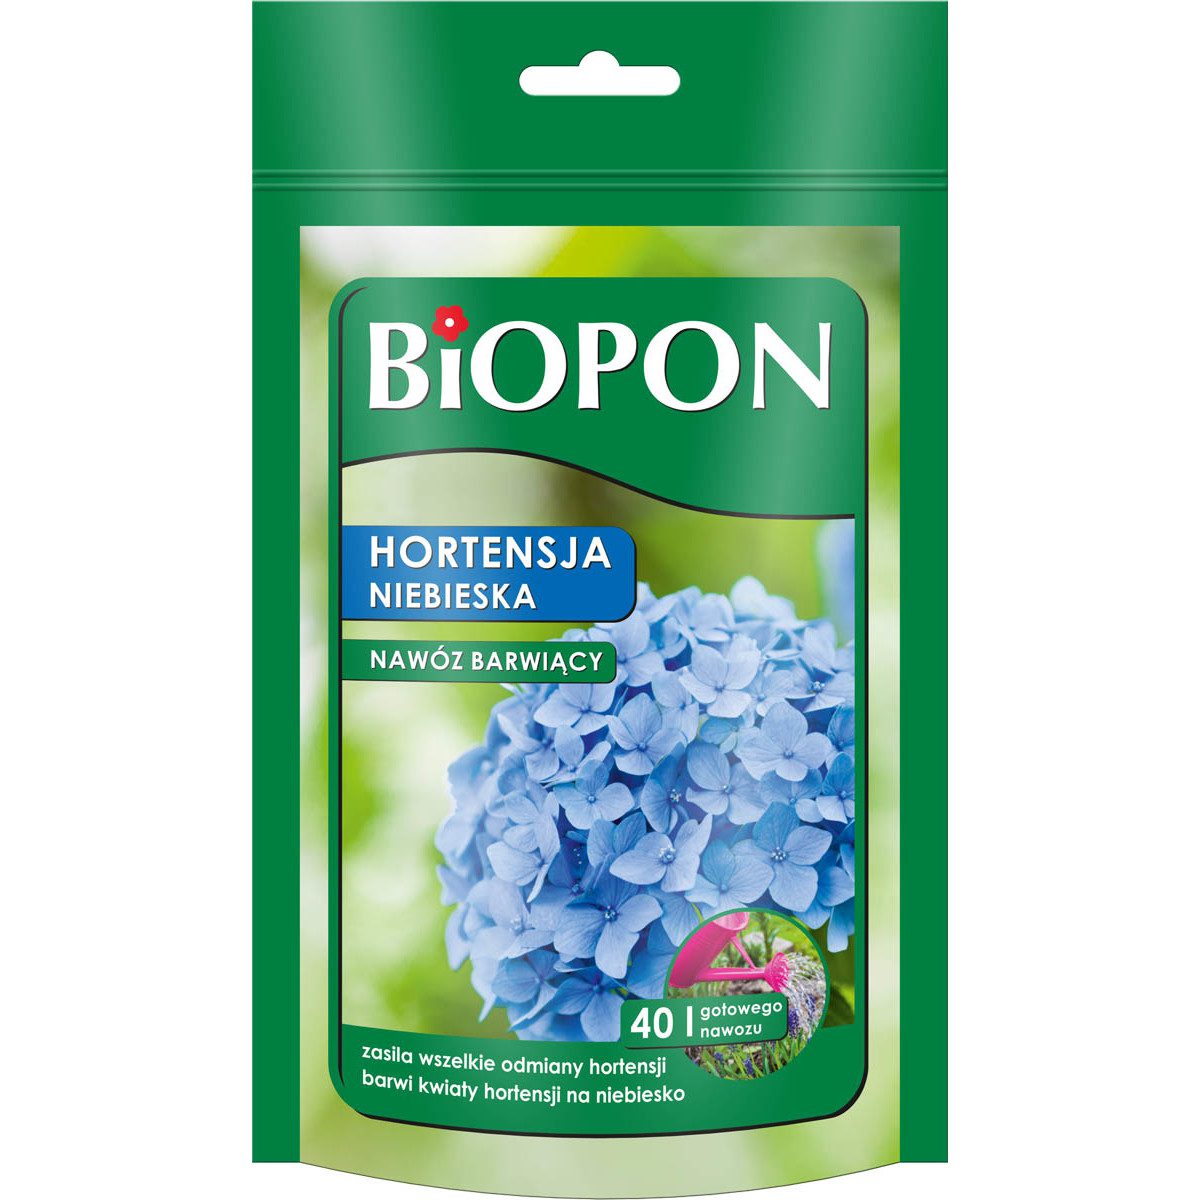 Biopon Hortensja niebieska – nawóz barwiący 200g